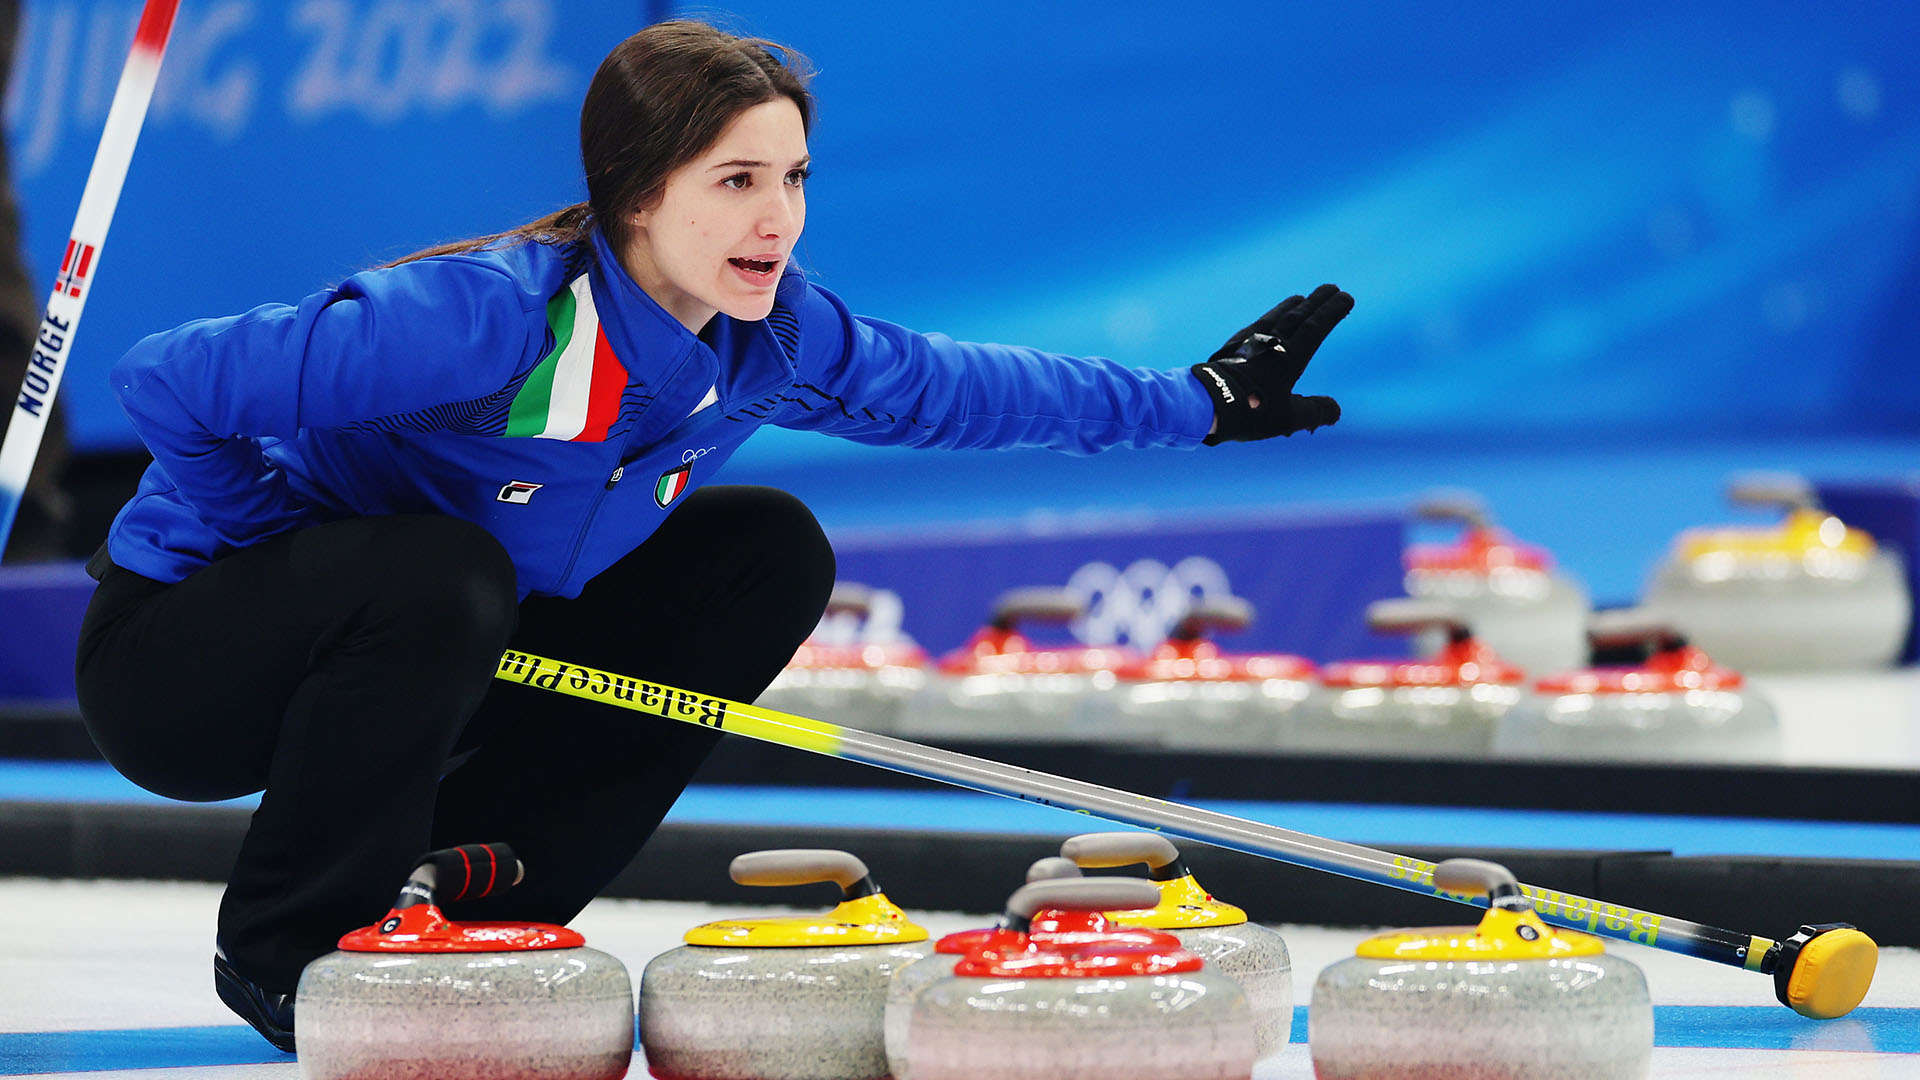 Pechino 2022: trionfo dell'Italia nel doppio misto del curling. Le foto